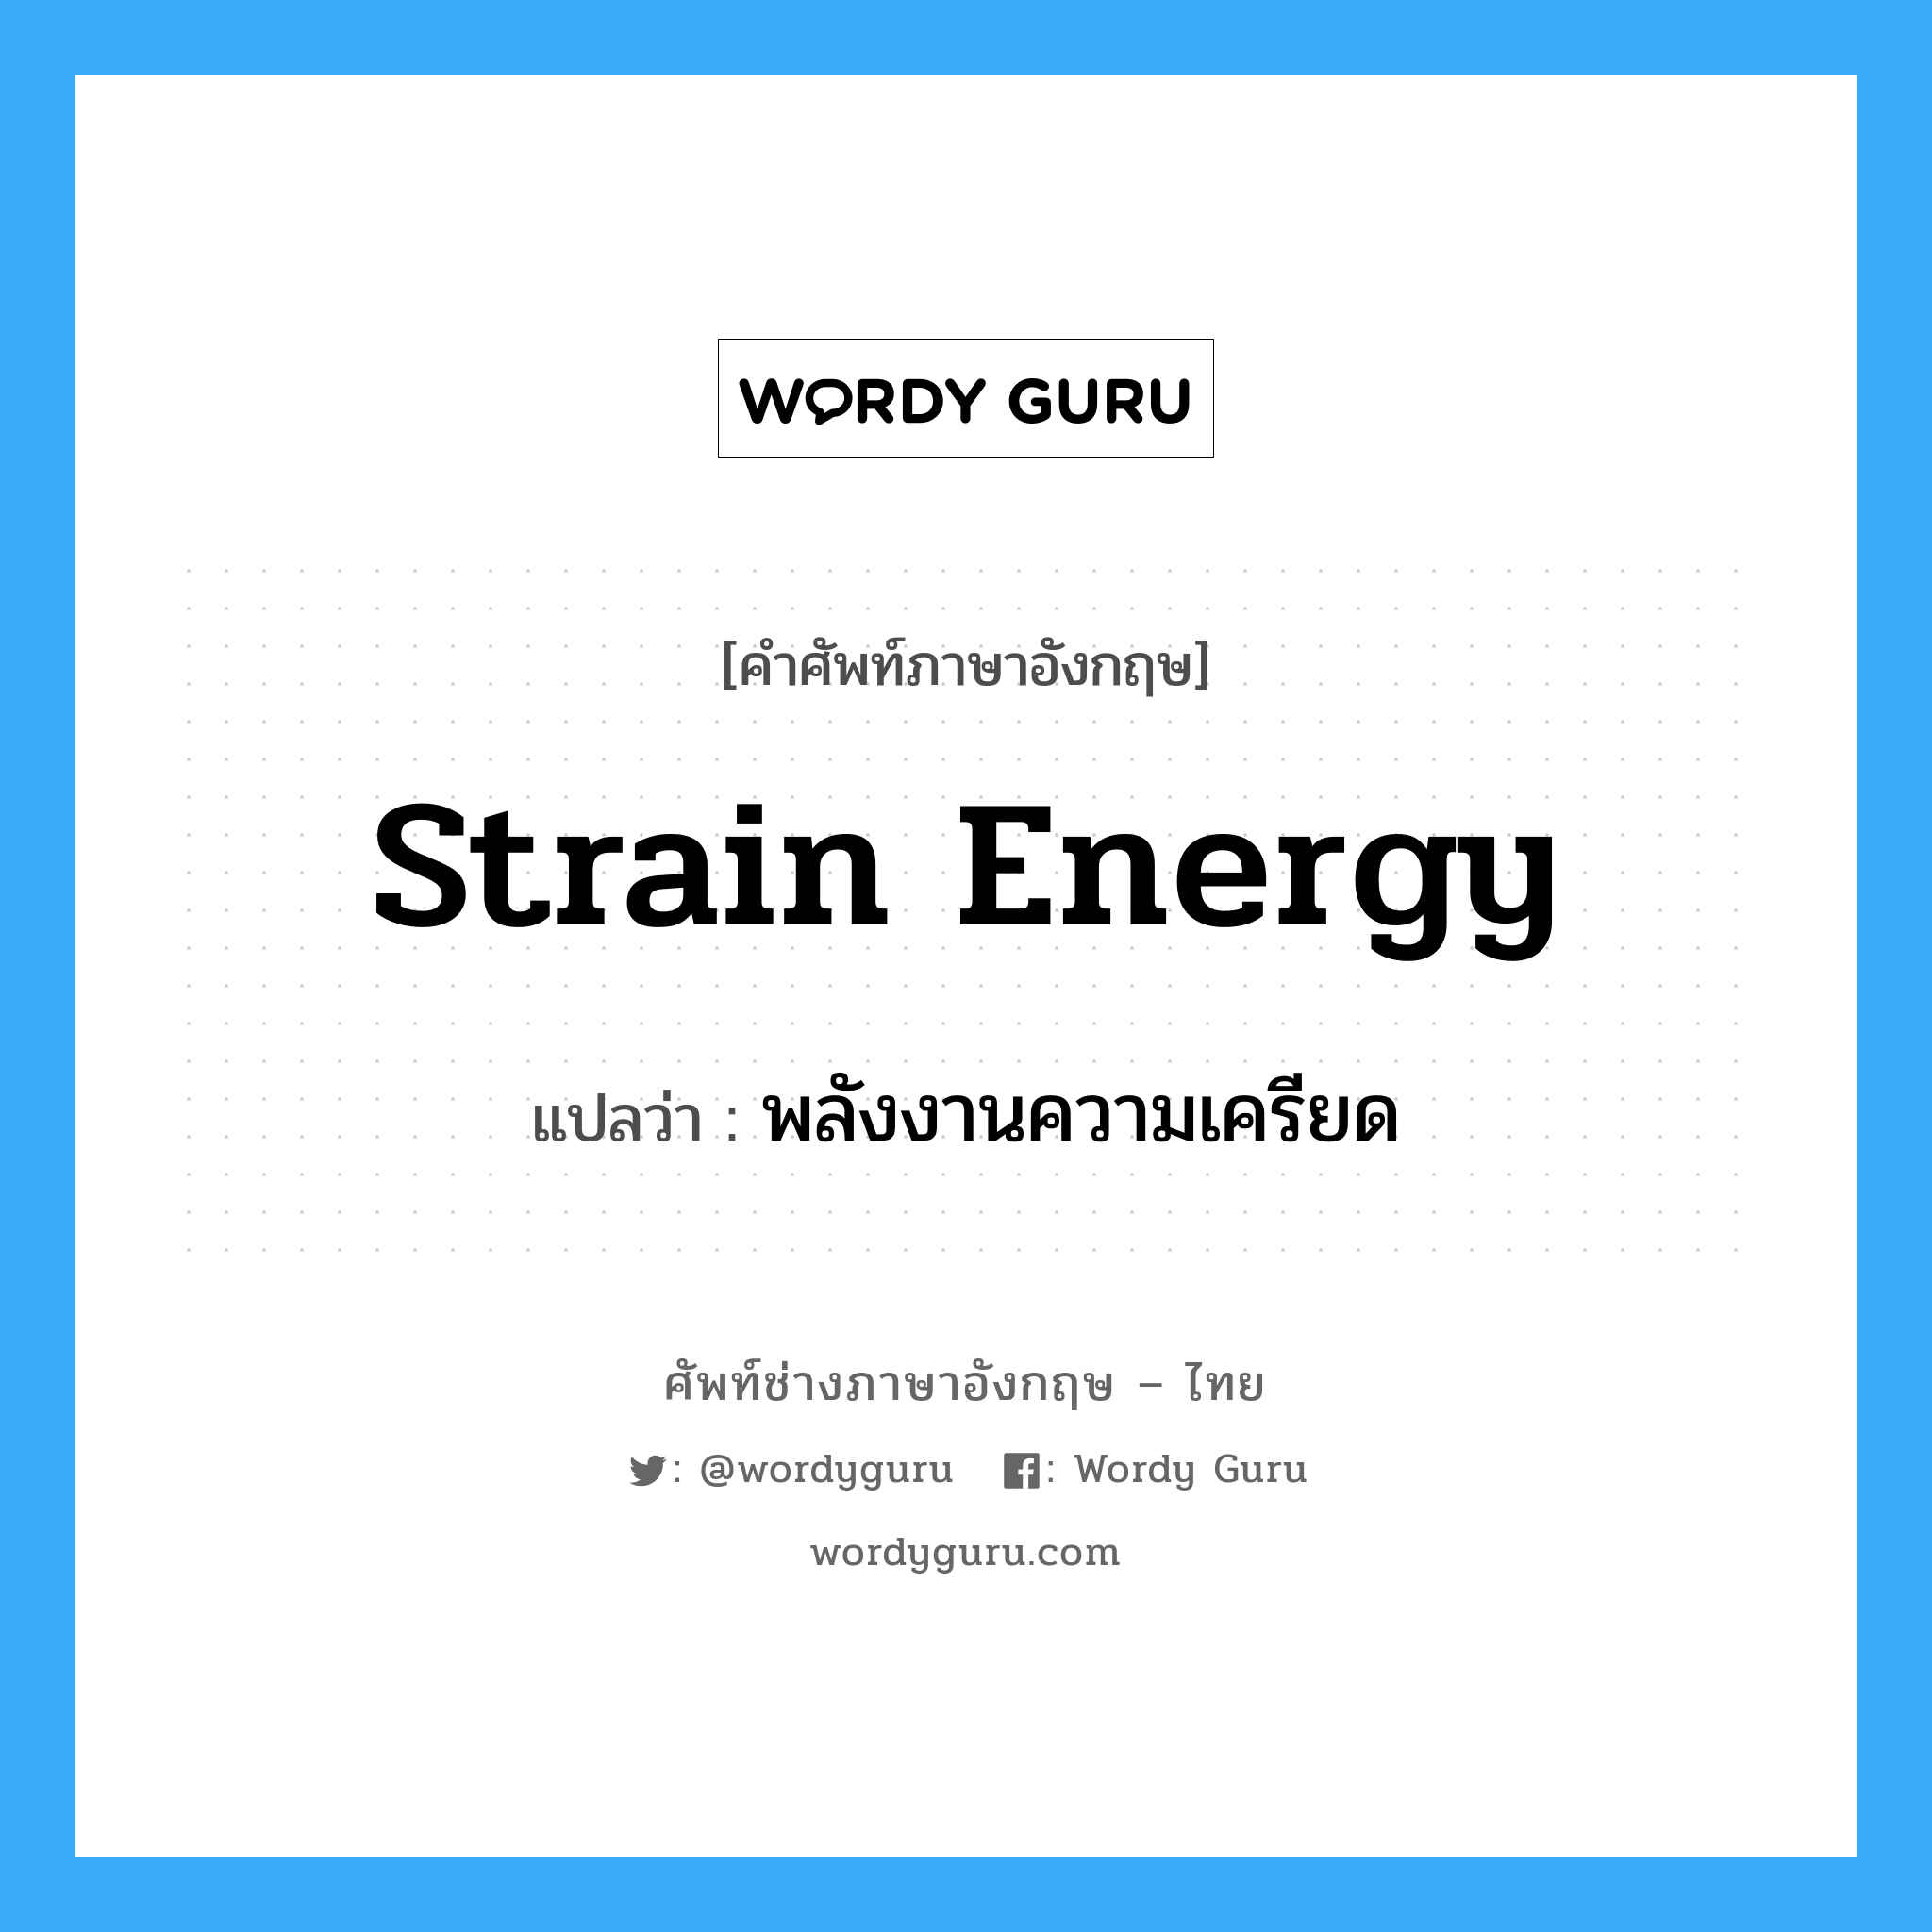 พลังงานความเครียด ภาษาอังกฤษ?, คำศัพท์ช่างภาษาอังกฤษ - ไทย พลังงานความเครียด คำศัพท์ภาษาอังกฤษ พลังงานความเครียด แปลว่า strain energy